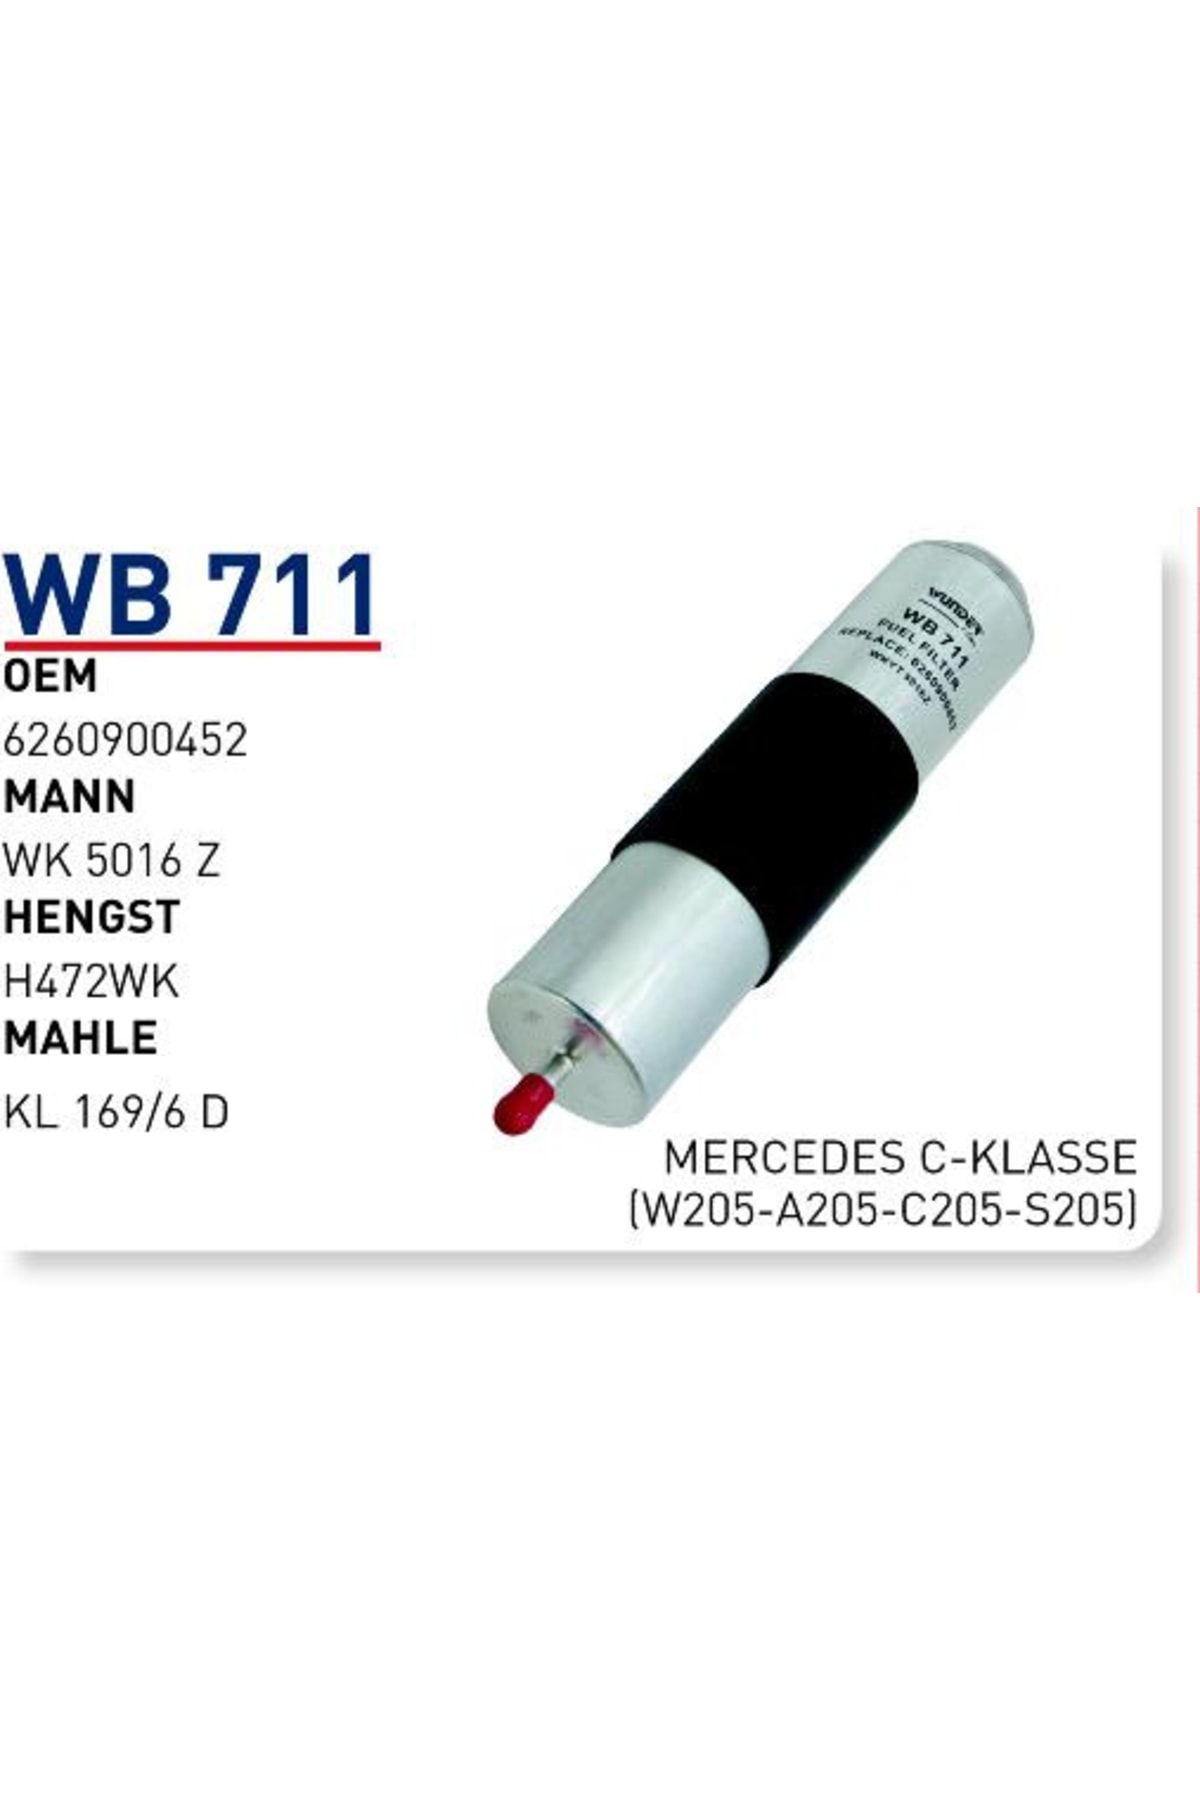 WUNDER Wb711 Mazot Filtresi - Mercedes C-klasse(w205-a205-c205-s205)